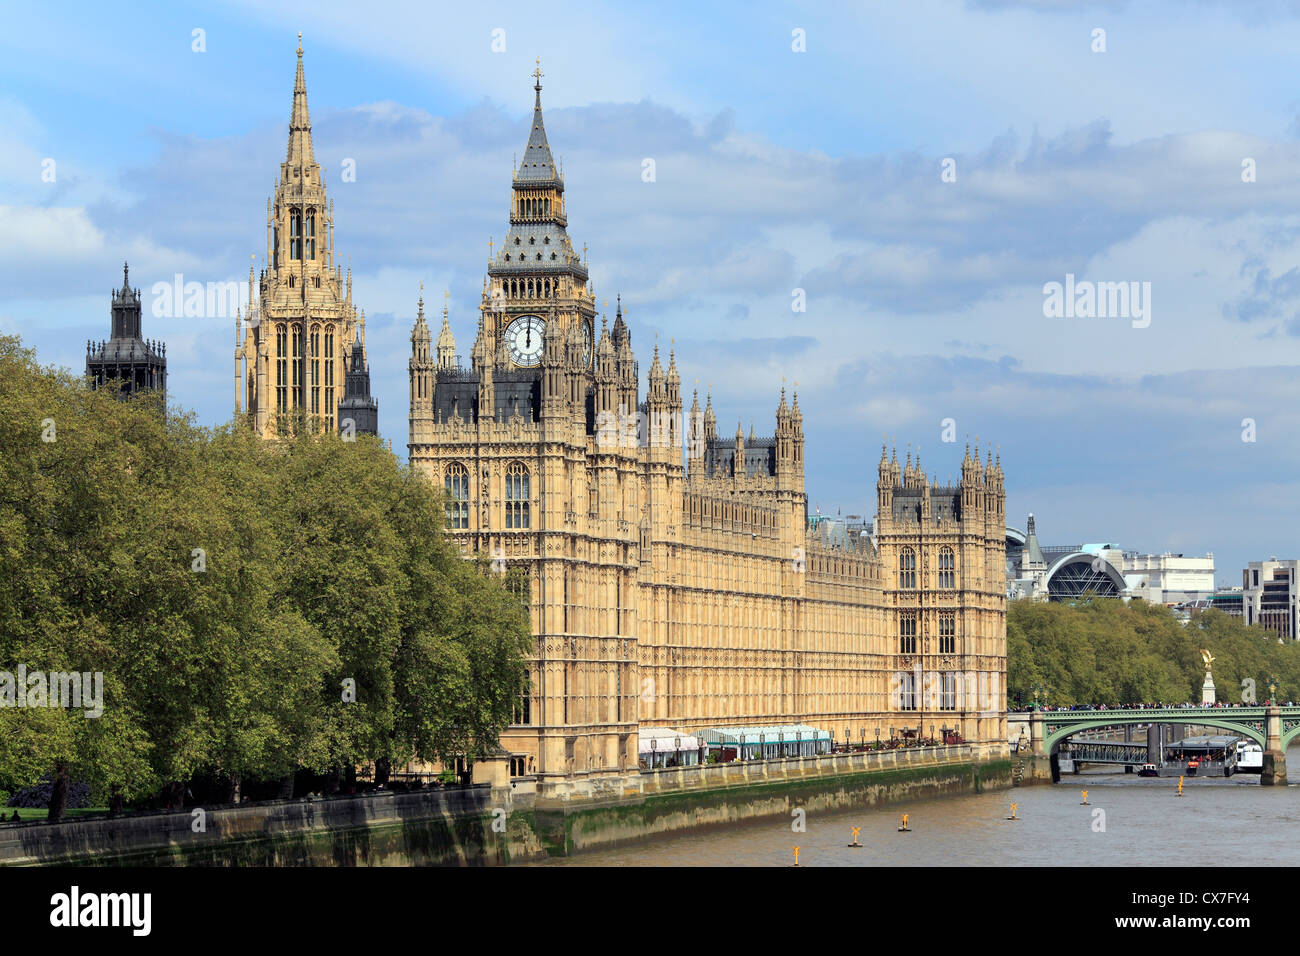 Le Palais de Westminster (Parlement), London, UK Banque D'Images